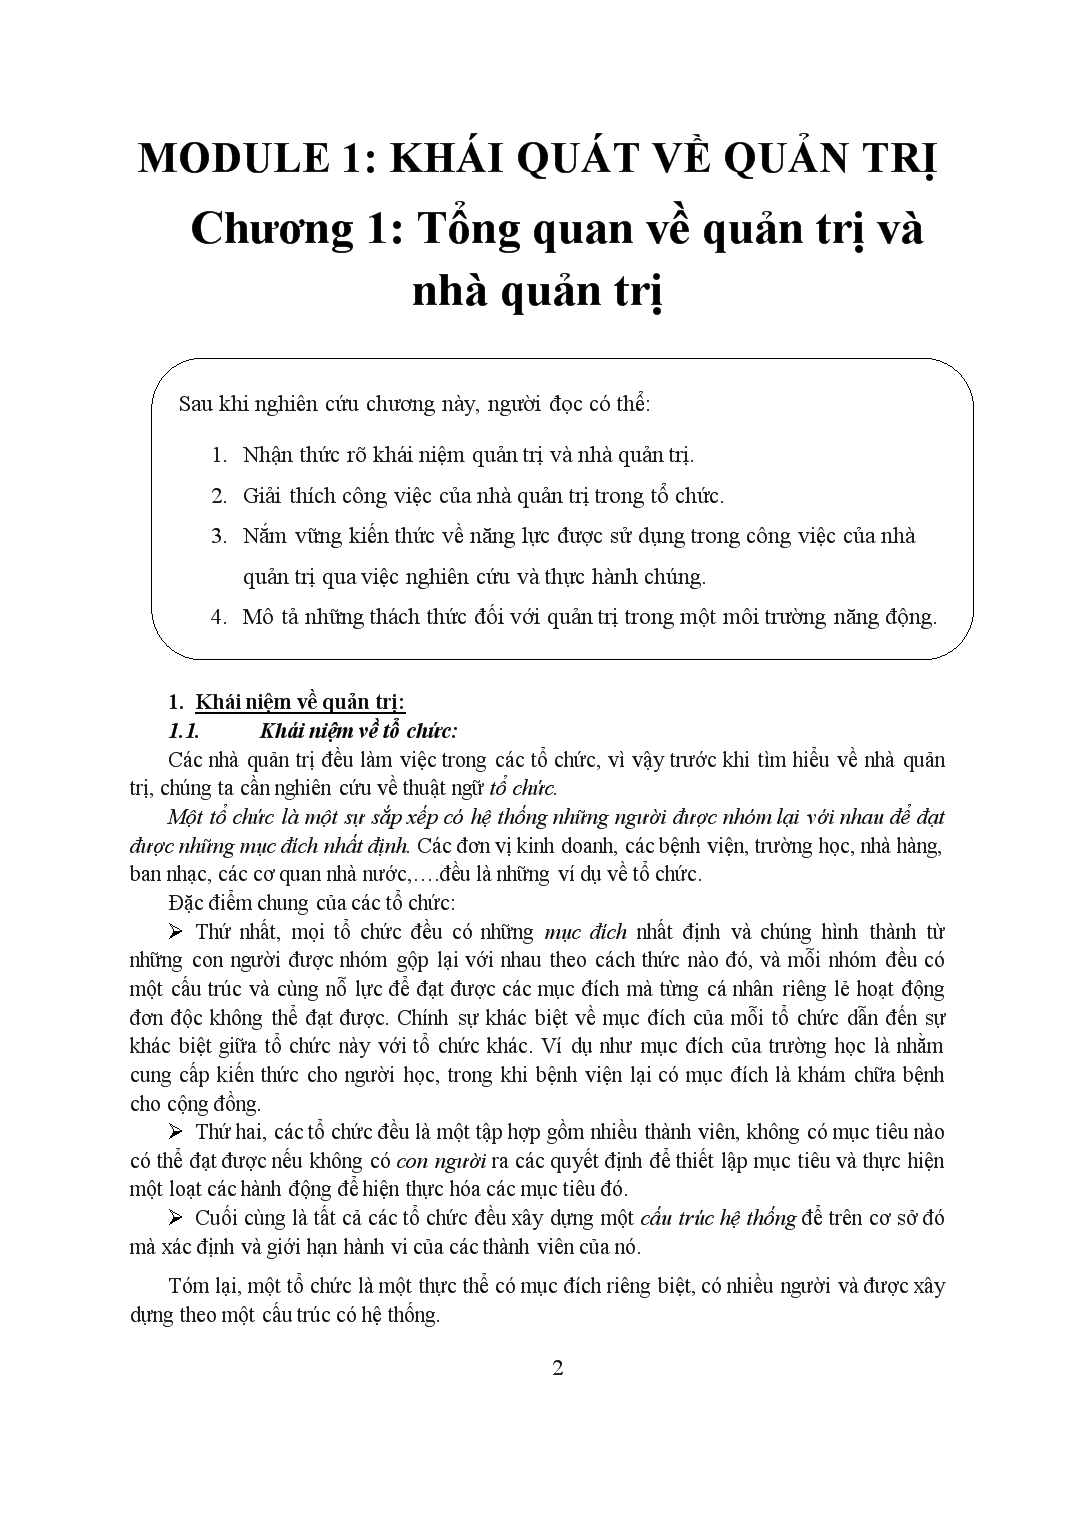 Giáo trình Quản trị học - Trịnh Đình Hậu trang 2